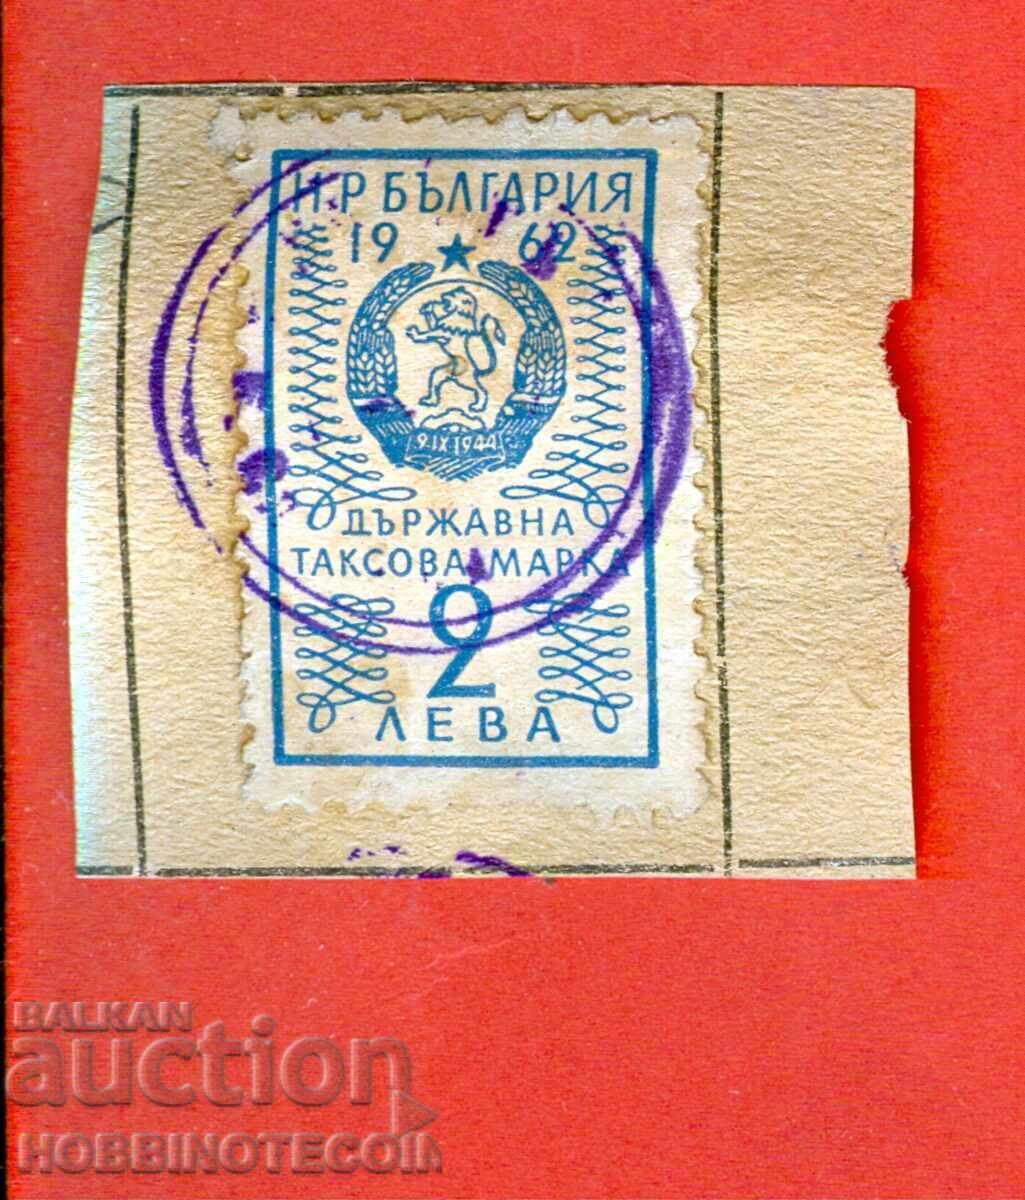 BULGARIA TAX STAMPS TAX STAMP 2 BGN - 1962 - 11